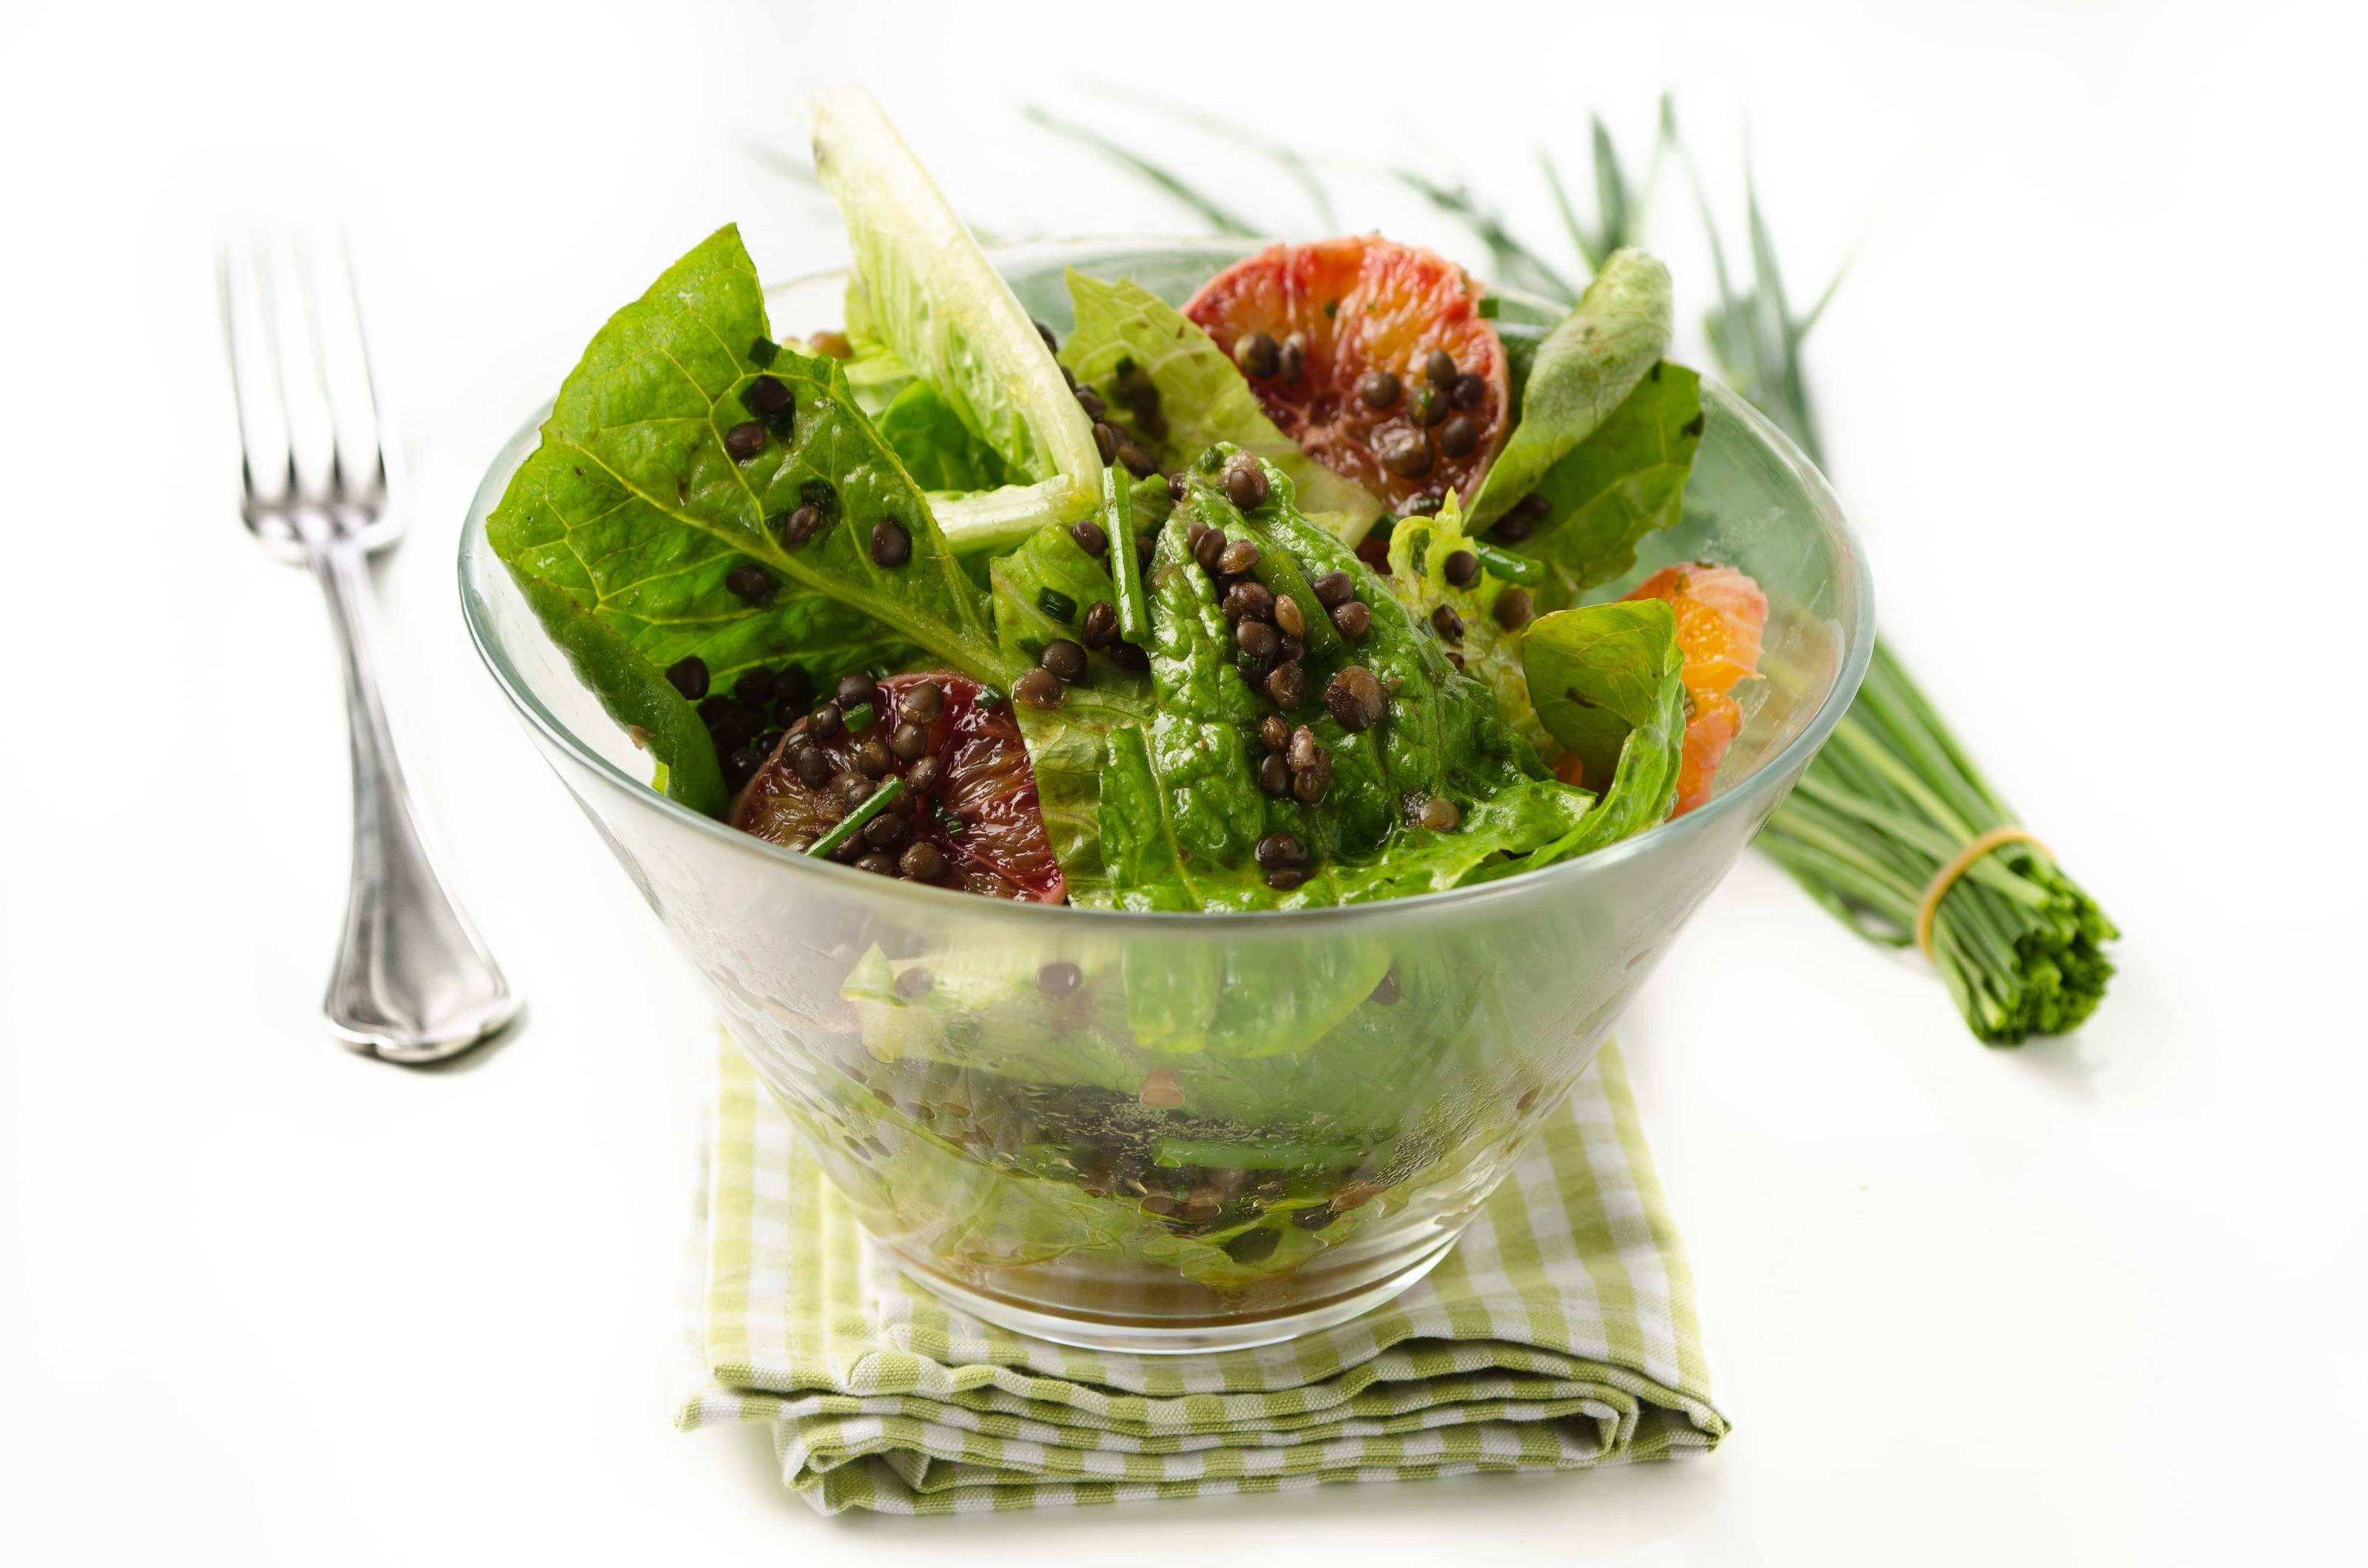 Vegetarische Salate